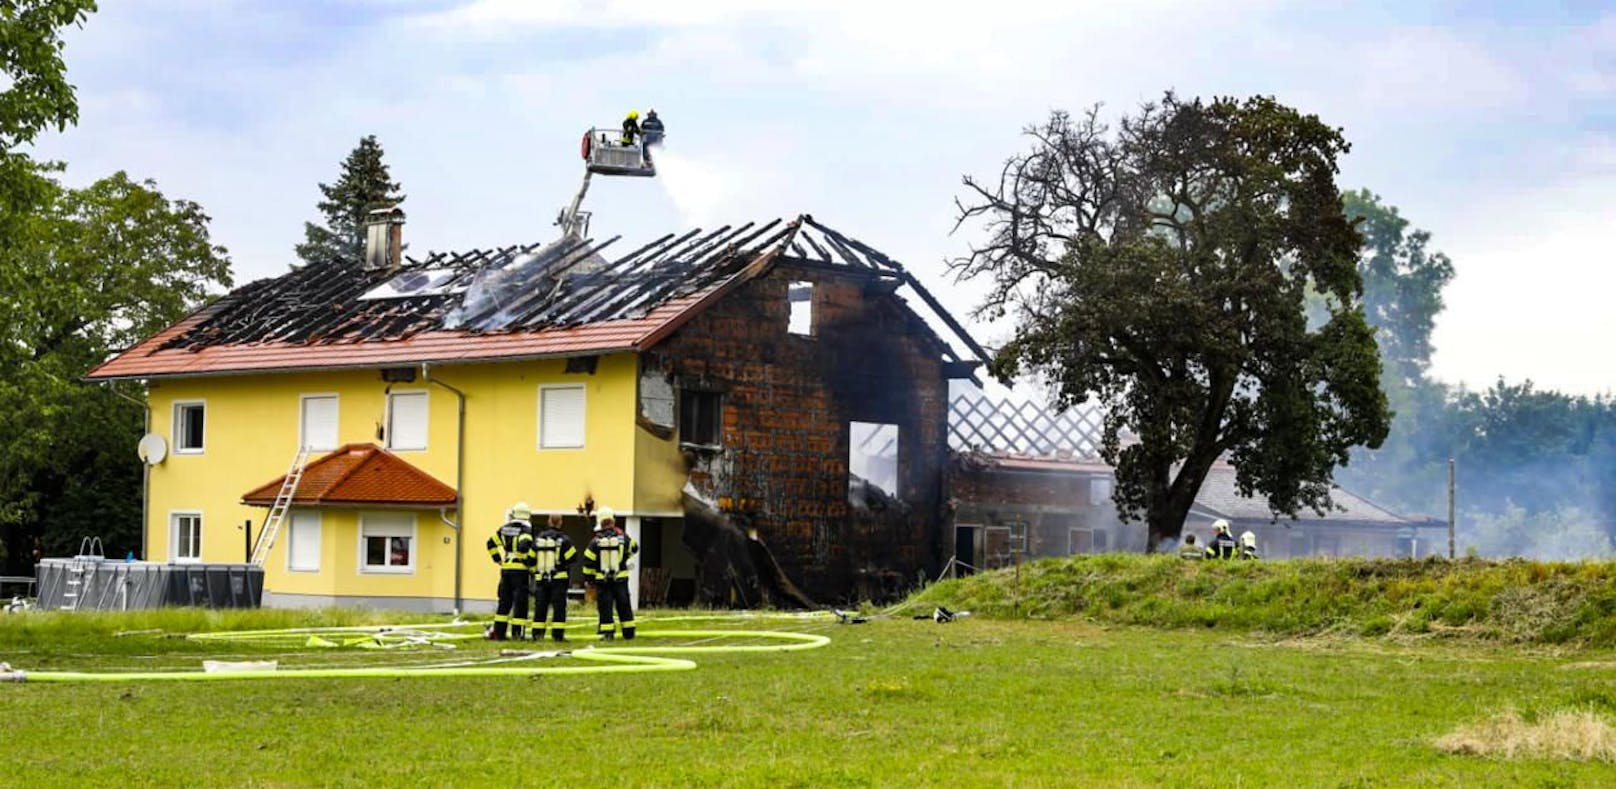 14 Feuerwehren bei Brand in Bauernhaus im Einsatz